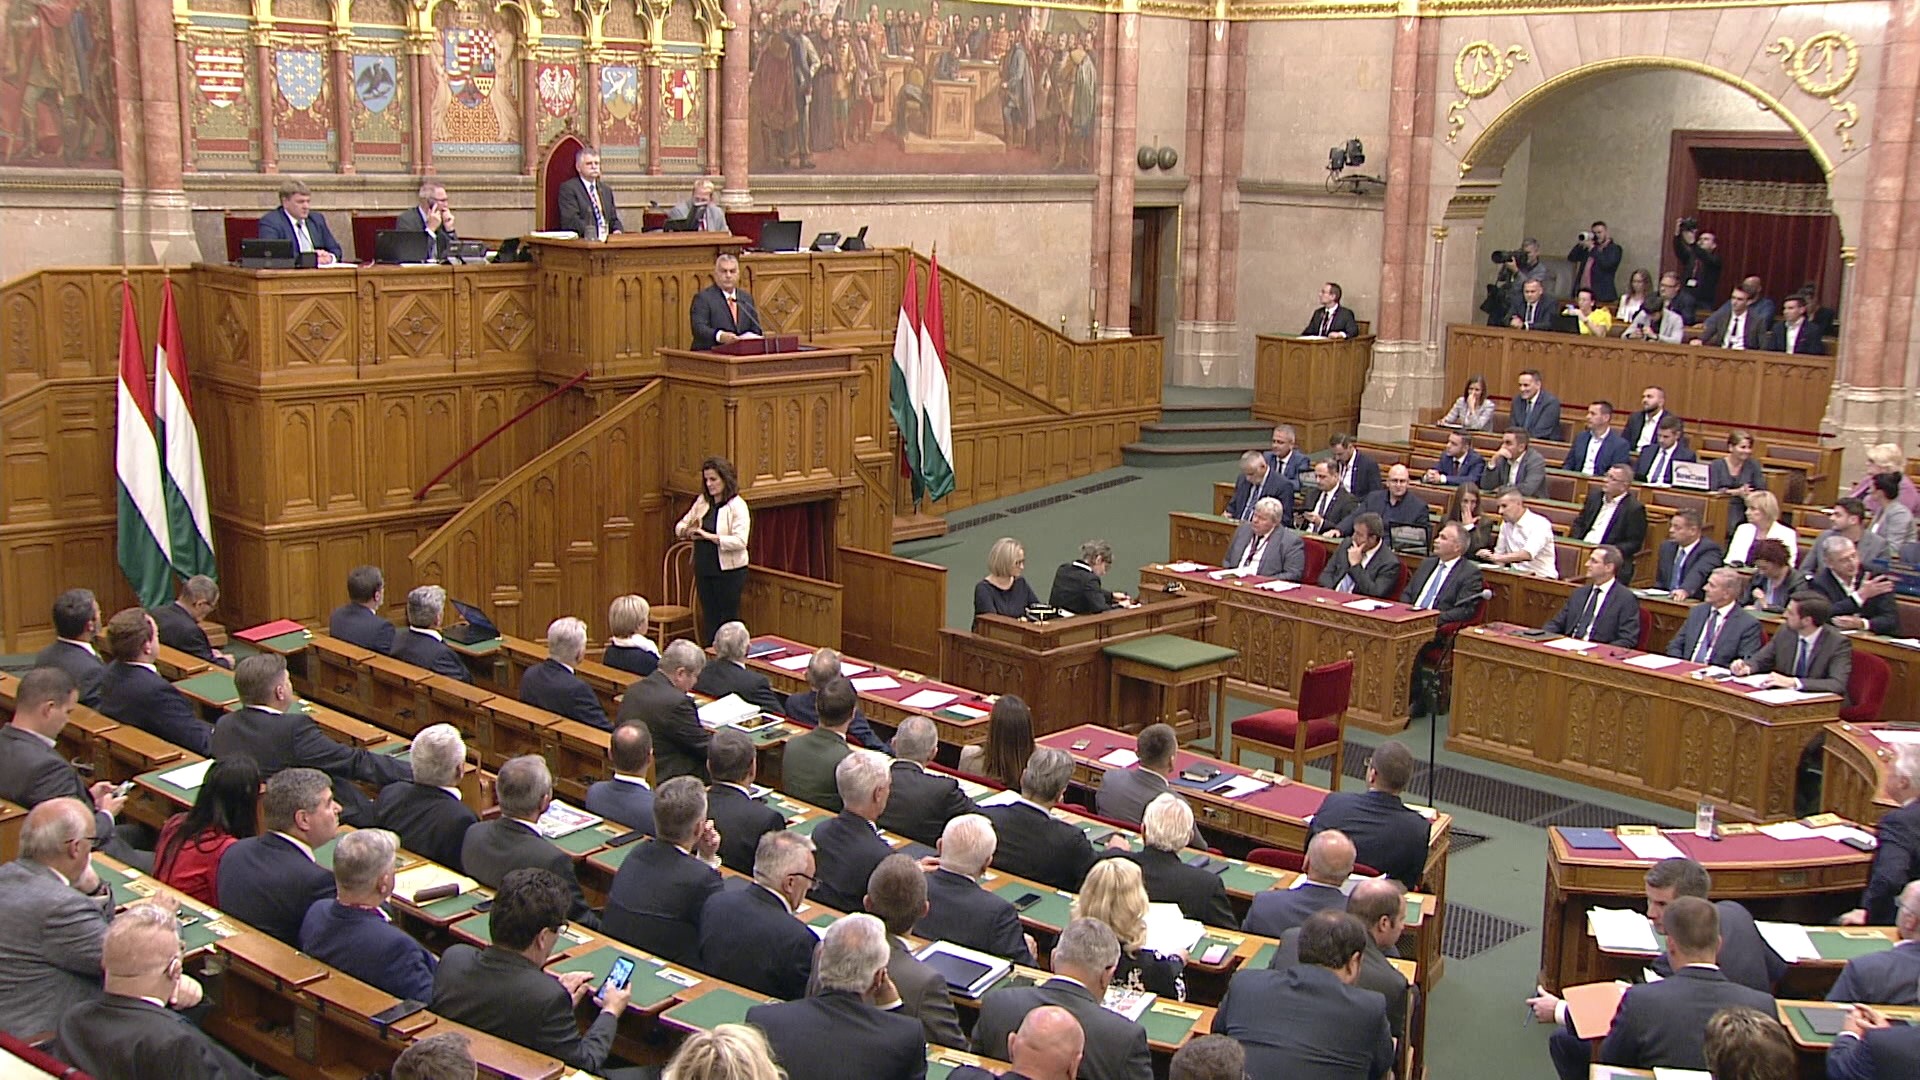 Bizottsági jelentések vitáival kezdi kétnapos ülését a parlament - VIDEÓ